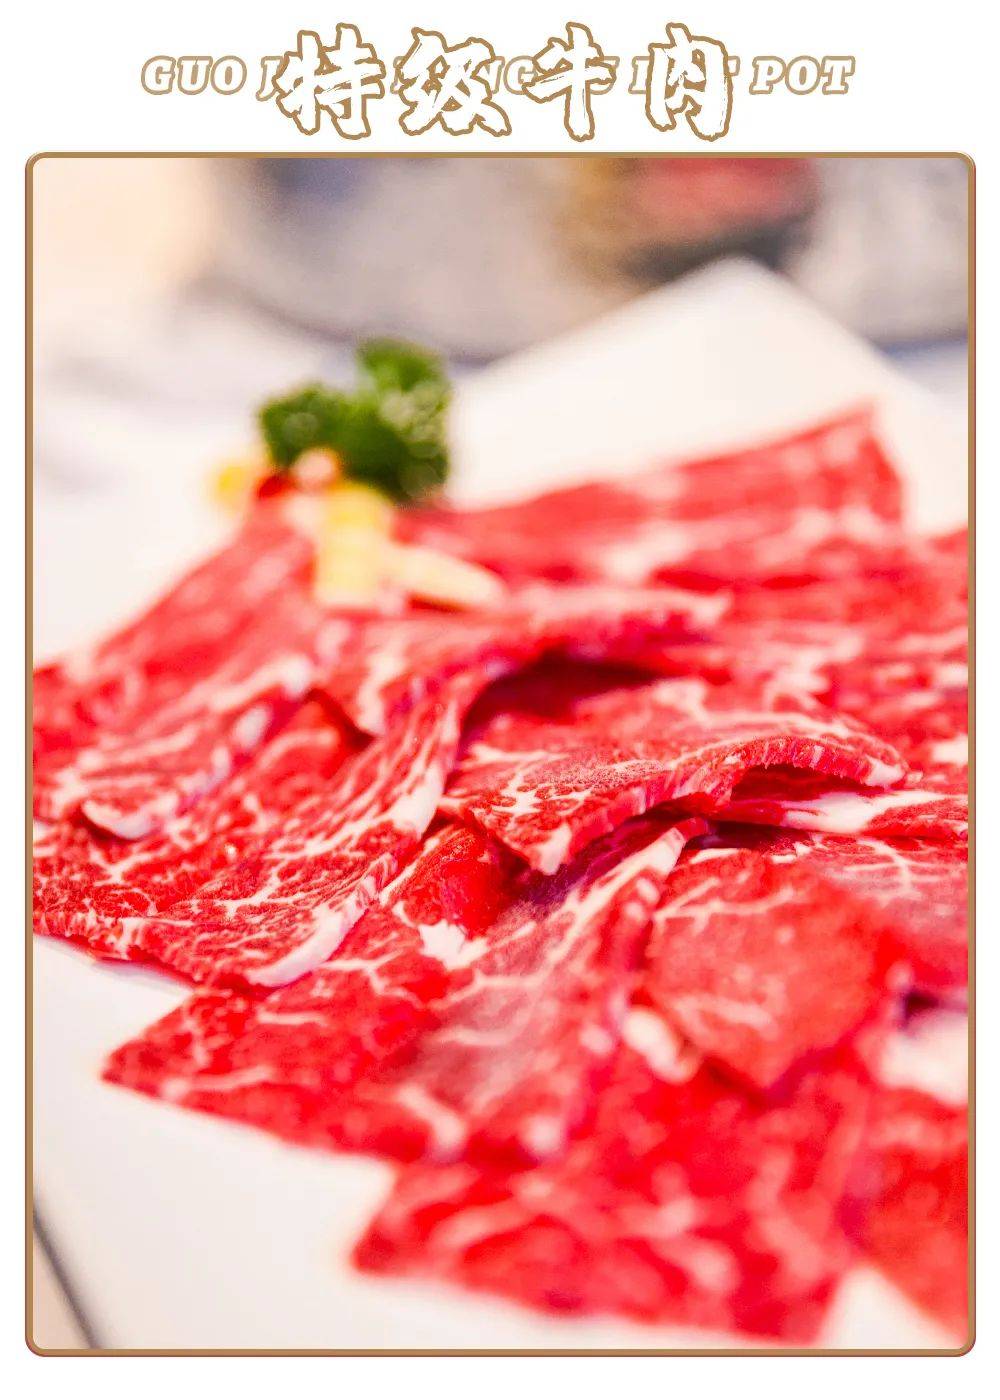 锅境的特级牛肉选用 雪花牛肉,由 专业厨师改刀,切配,摆盘.